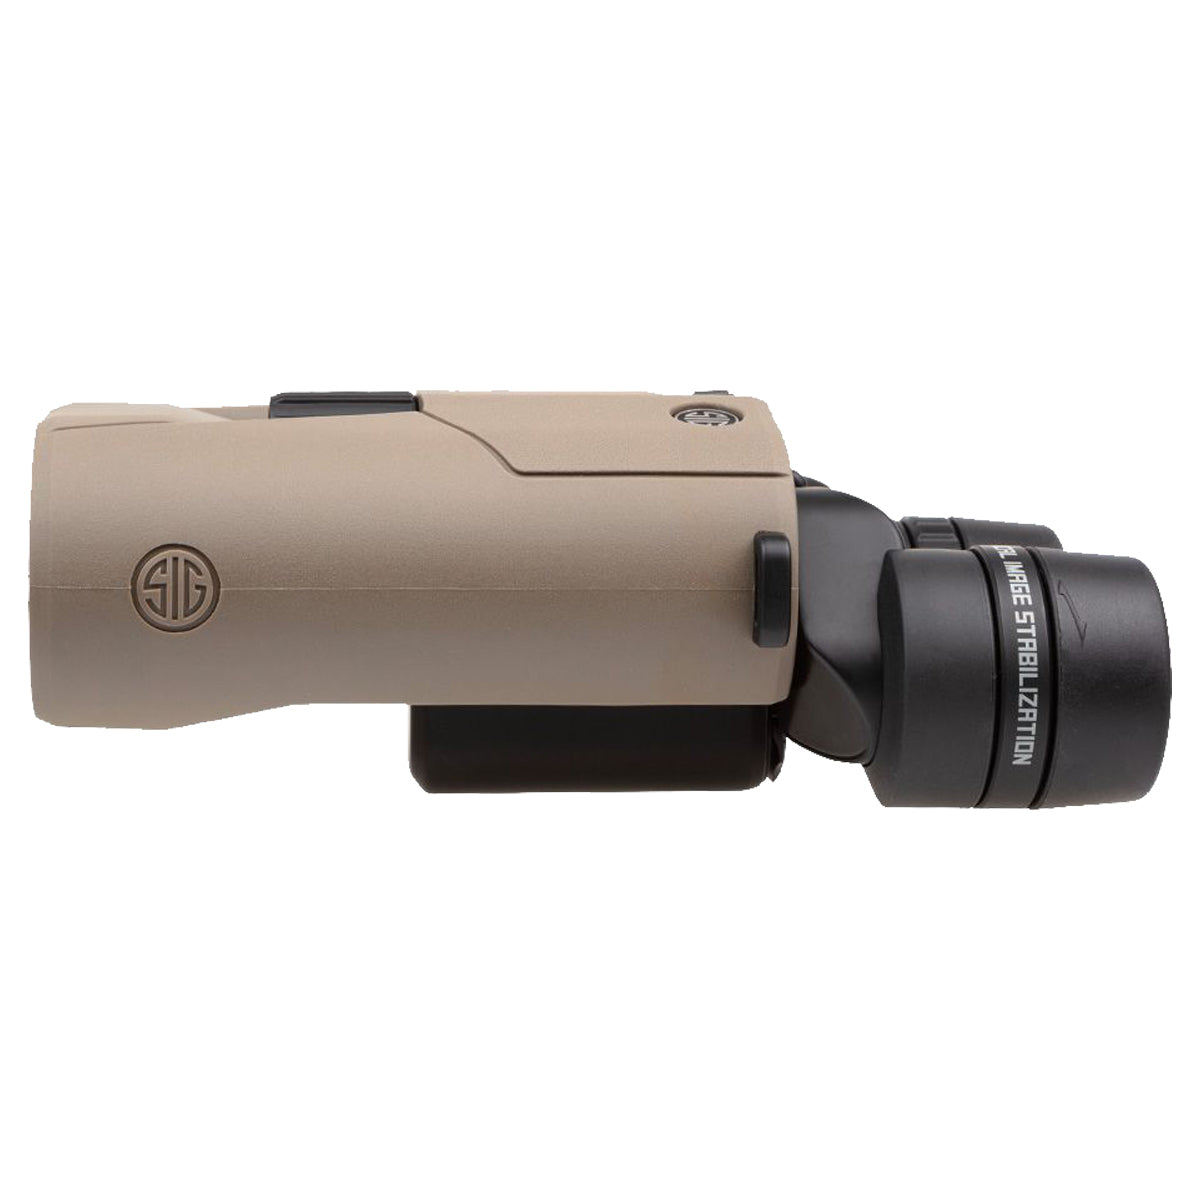 Sig Sauer ZULU6 HDX 12x42mm Image Stabilized Binocular in  by GOHUNT | Sig Sauer - GOHUNT Shop